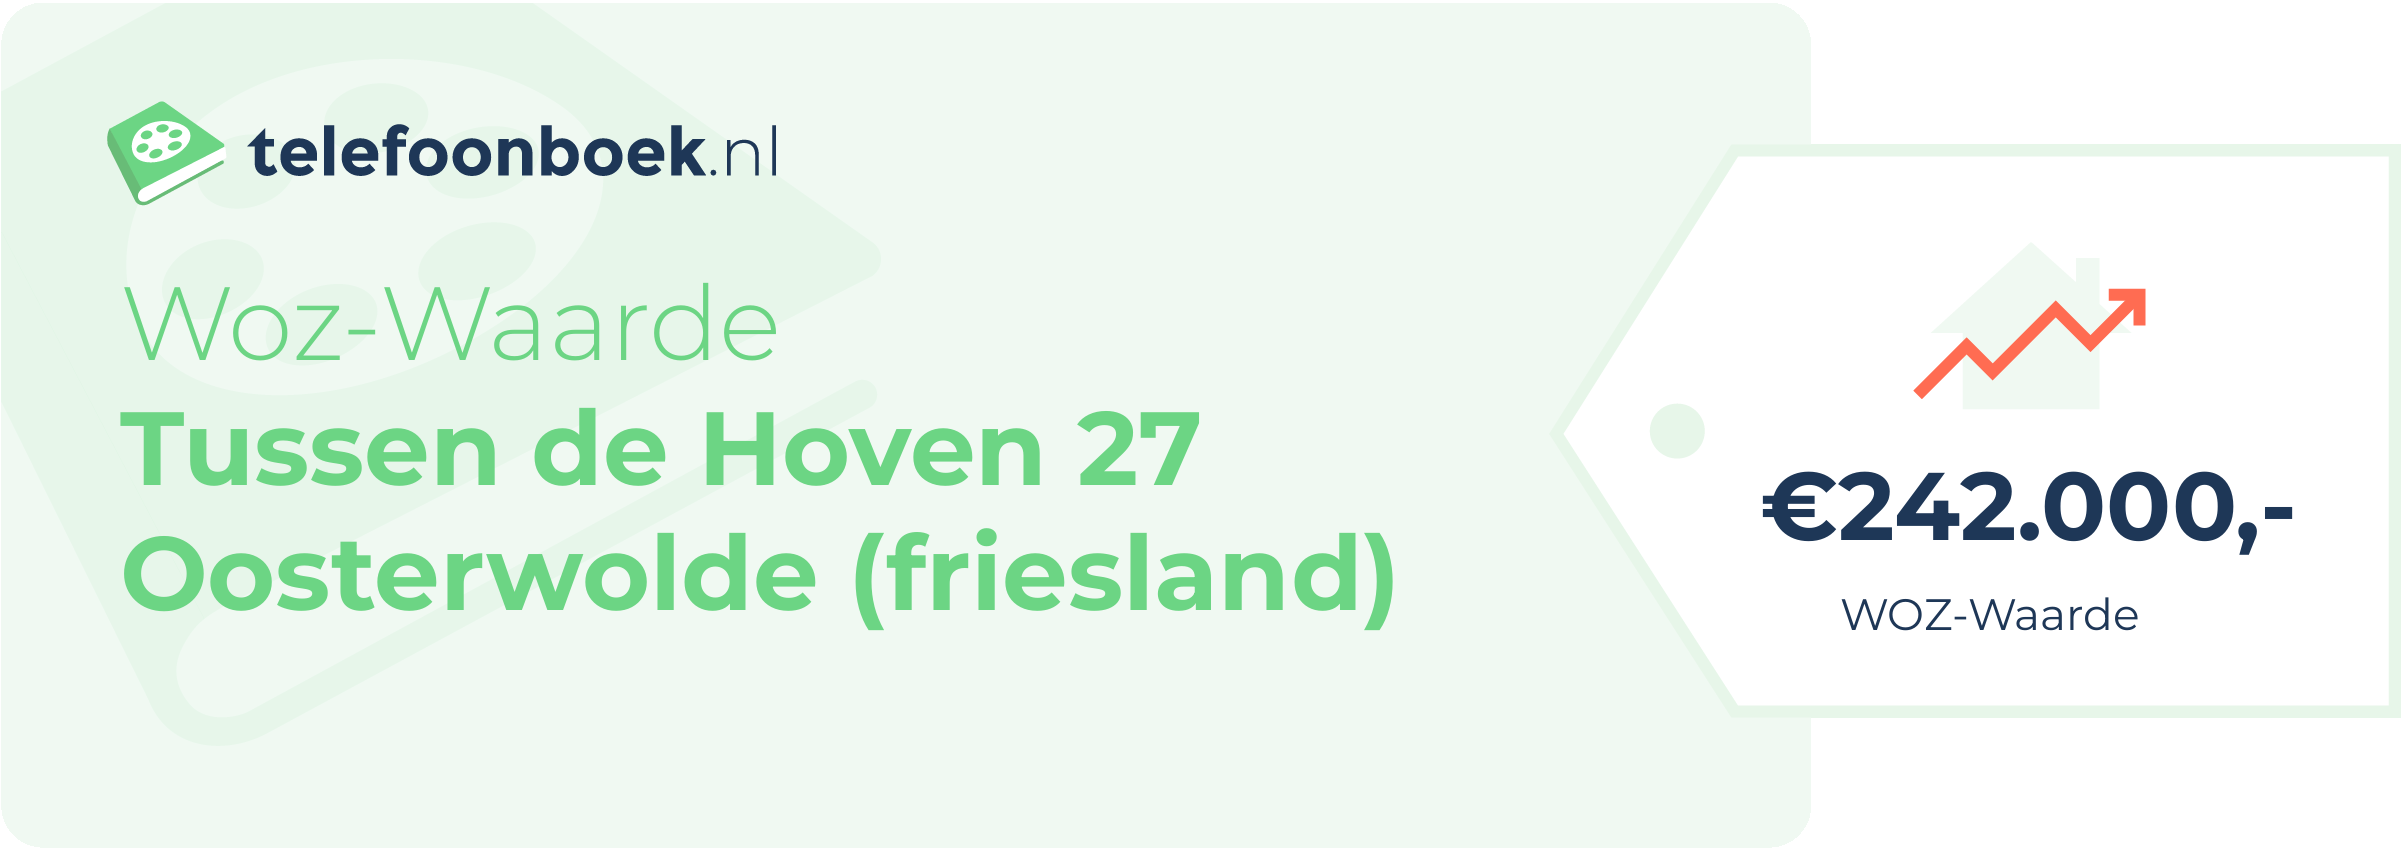 WOZ-waarde Tussen De Hoven 27 Oosterwolde (Friesland)